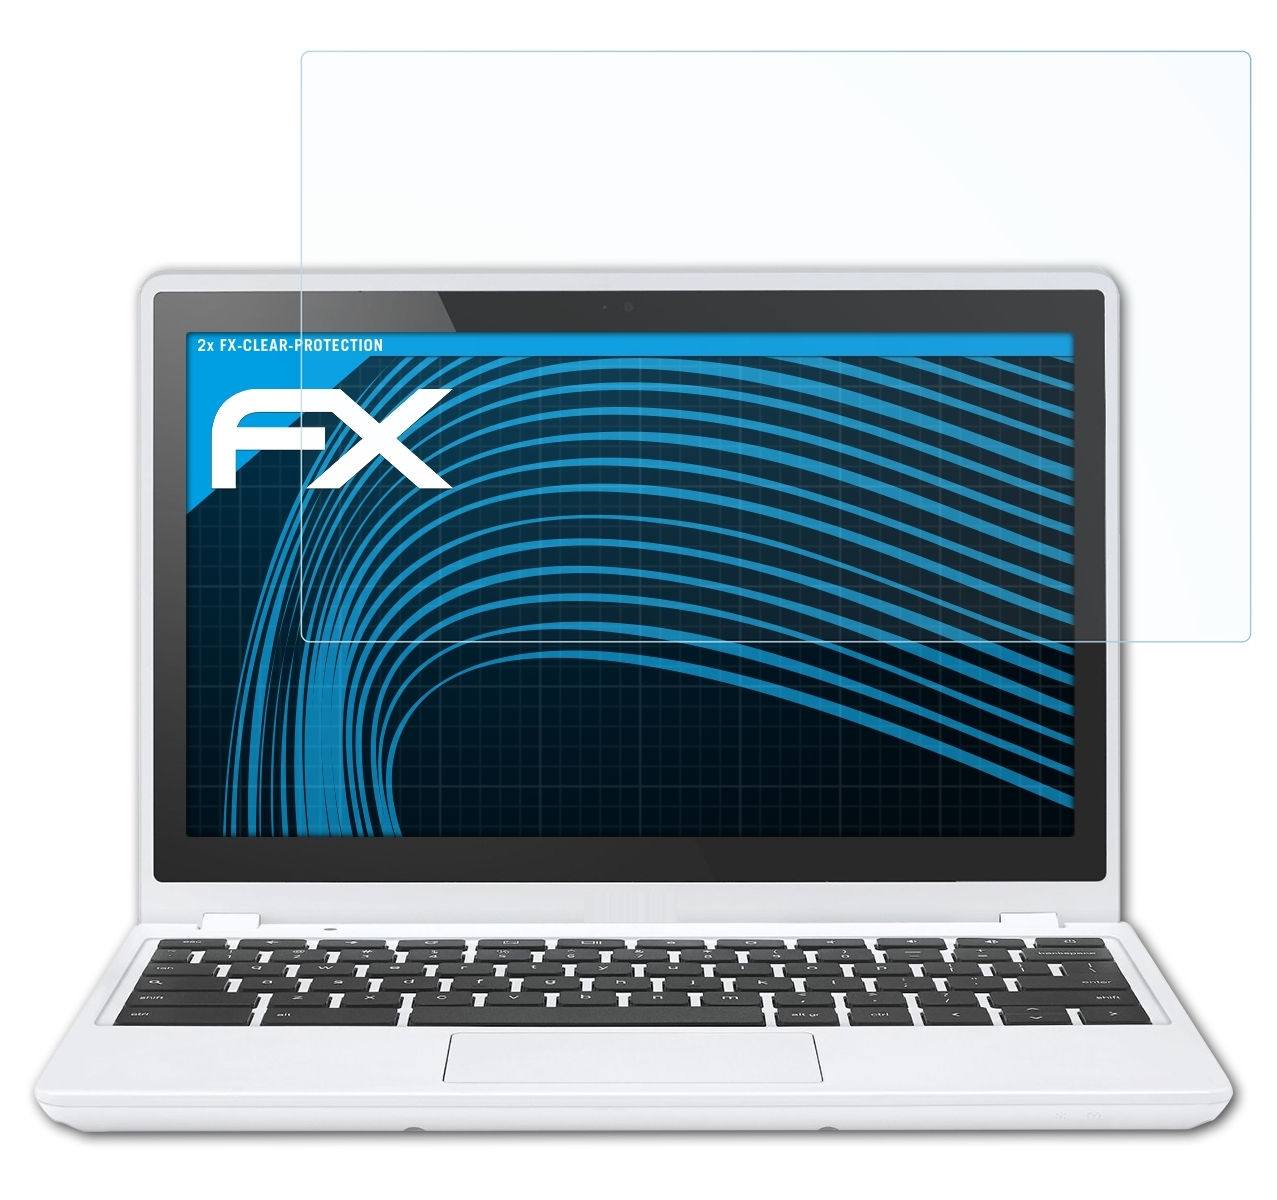 Google Inch) ATFOLIX (Acer)) FX-Clear (11.6 Displayschutz(für C720 2x Chromebook